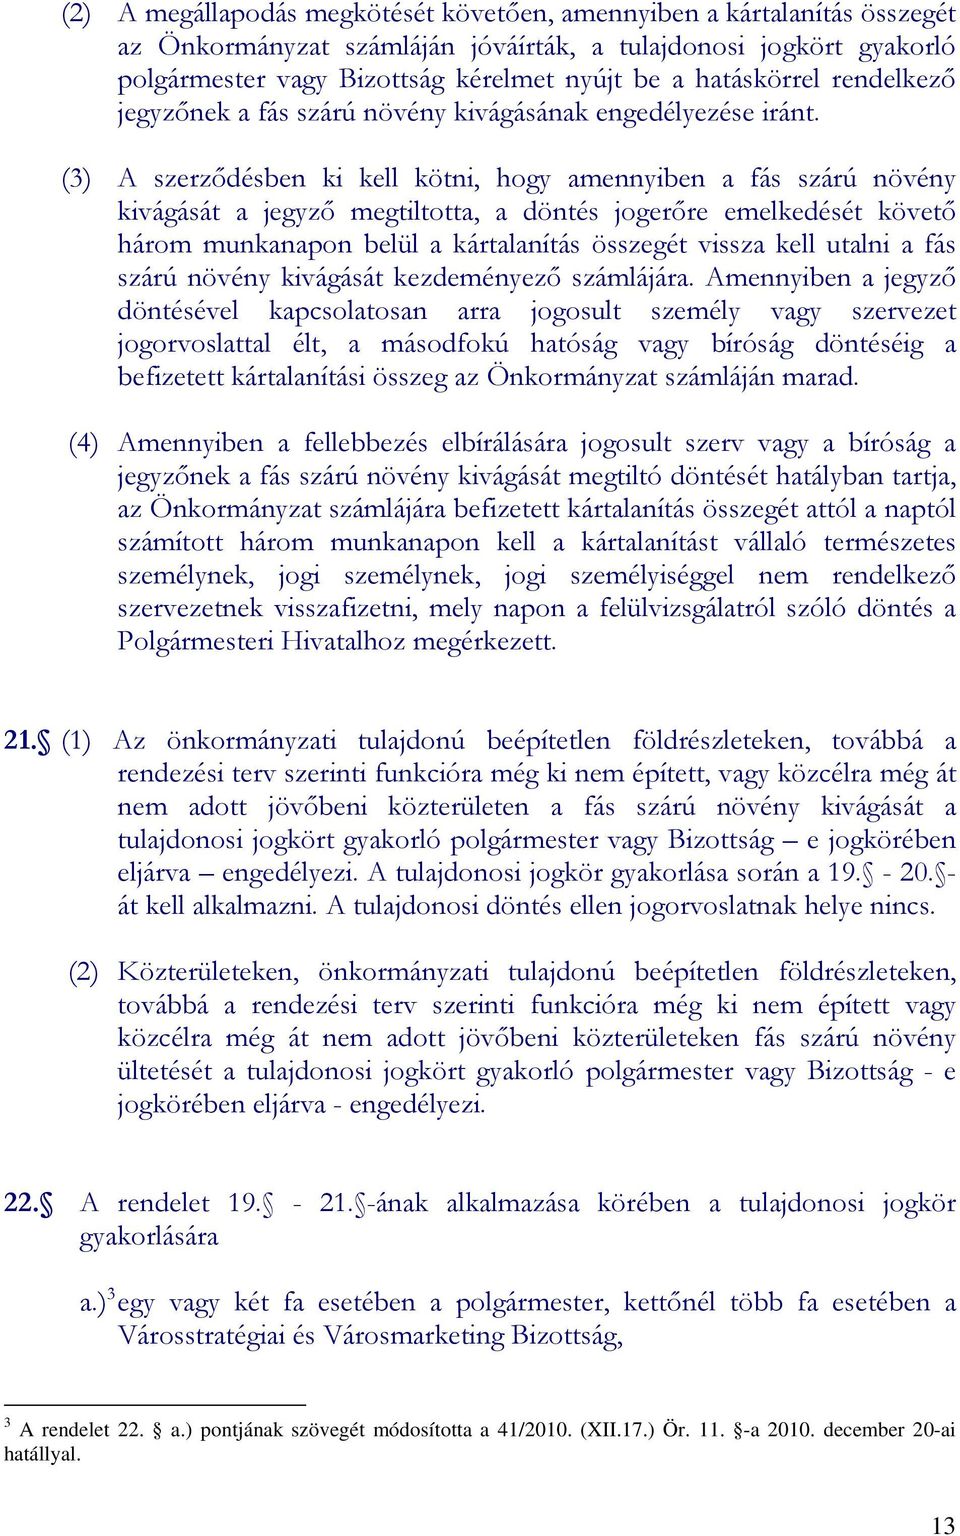 (3) A szerzıdésben ki kell kötni, hogy amennyiben a fás szárú növény kivágását a jegyzı megtiltotta, a döntés jogerıre emelkedését követı három munkanapon belül a kártalanítás összegét vissza kell